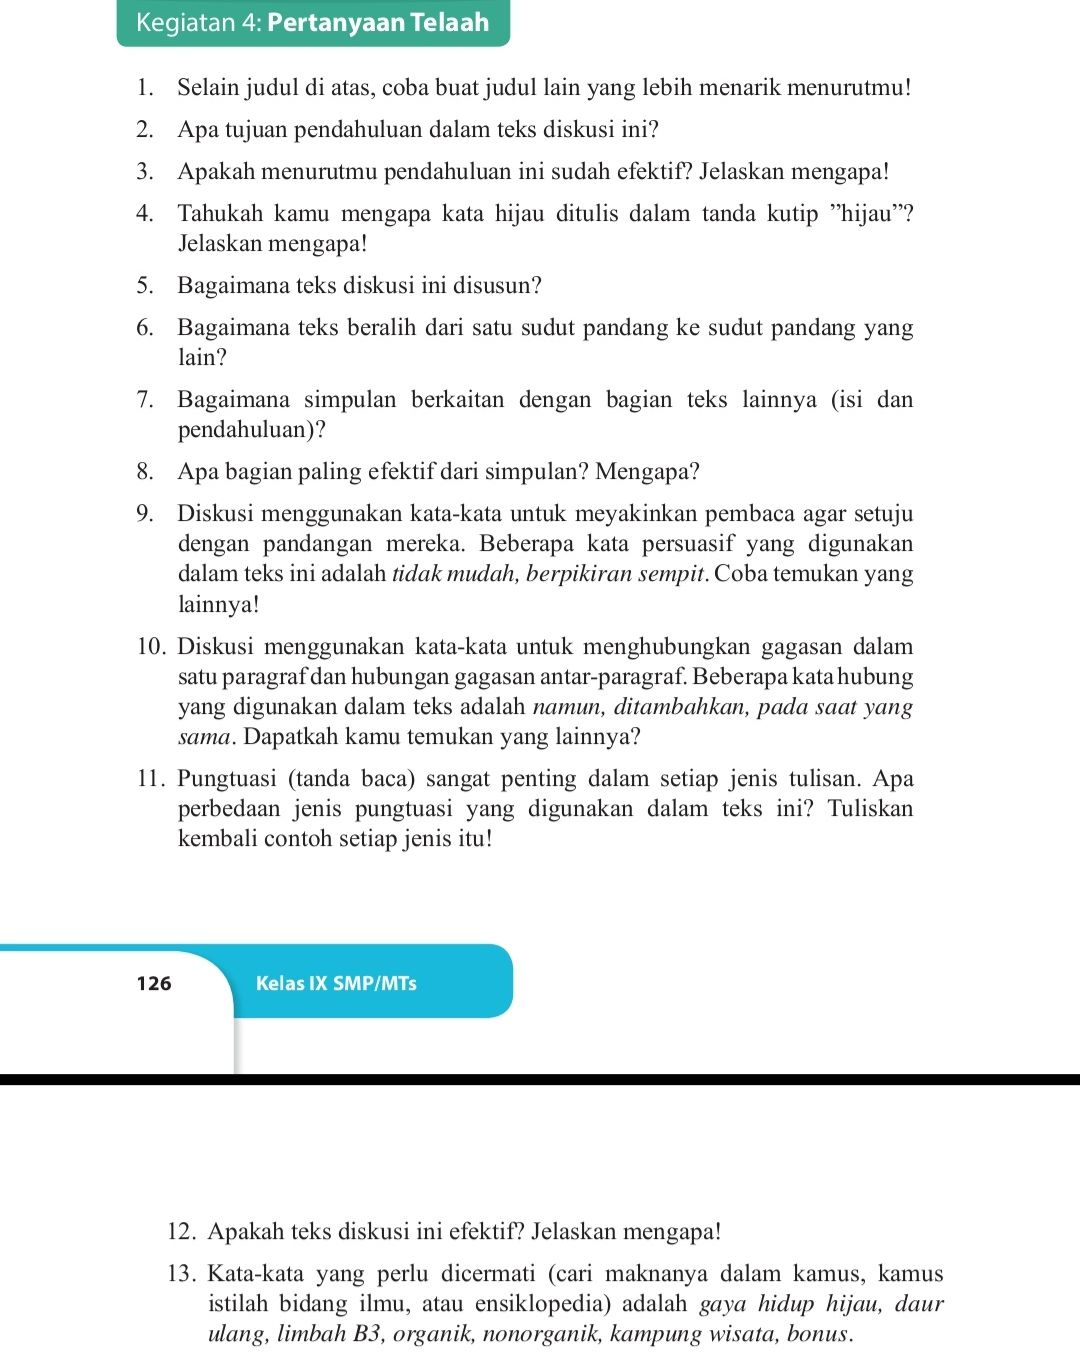 Kunci Jawaban Bahasa Indonesia Kelas 9 Halaman 126 127 kegiatan 4.*